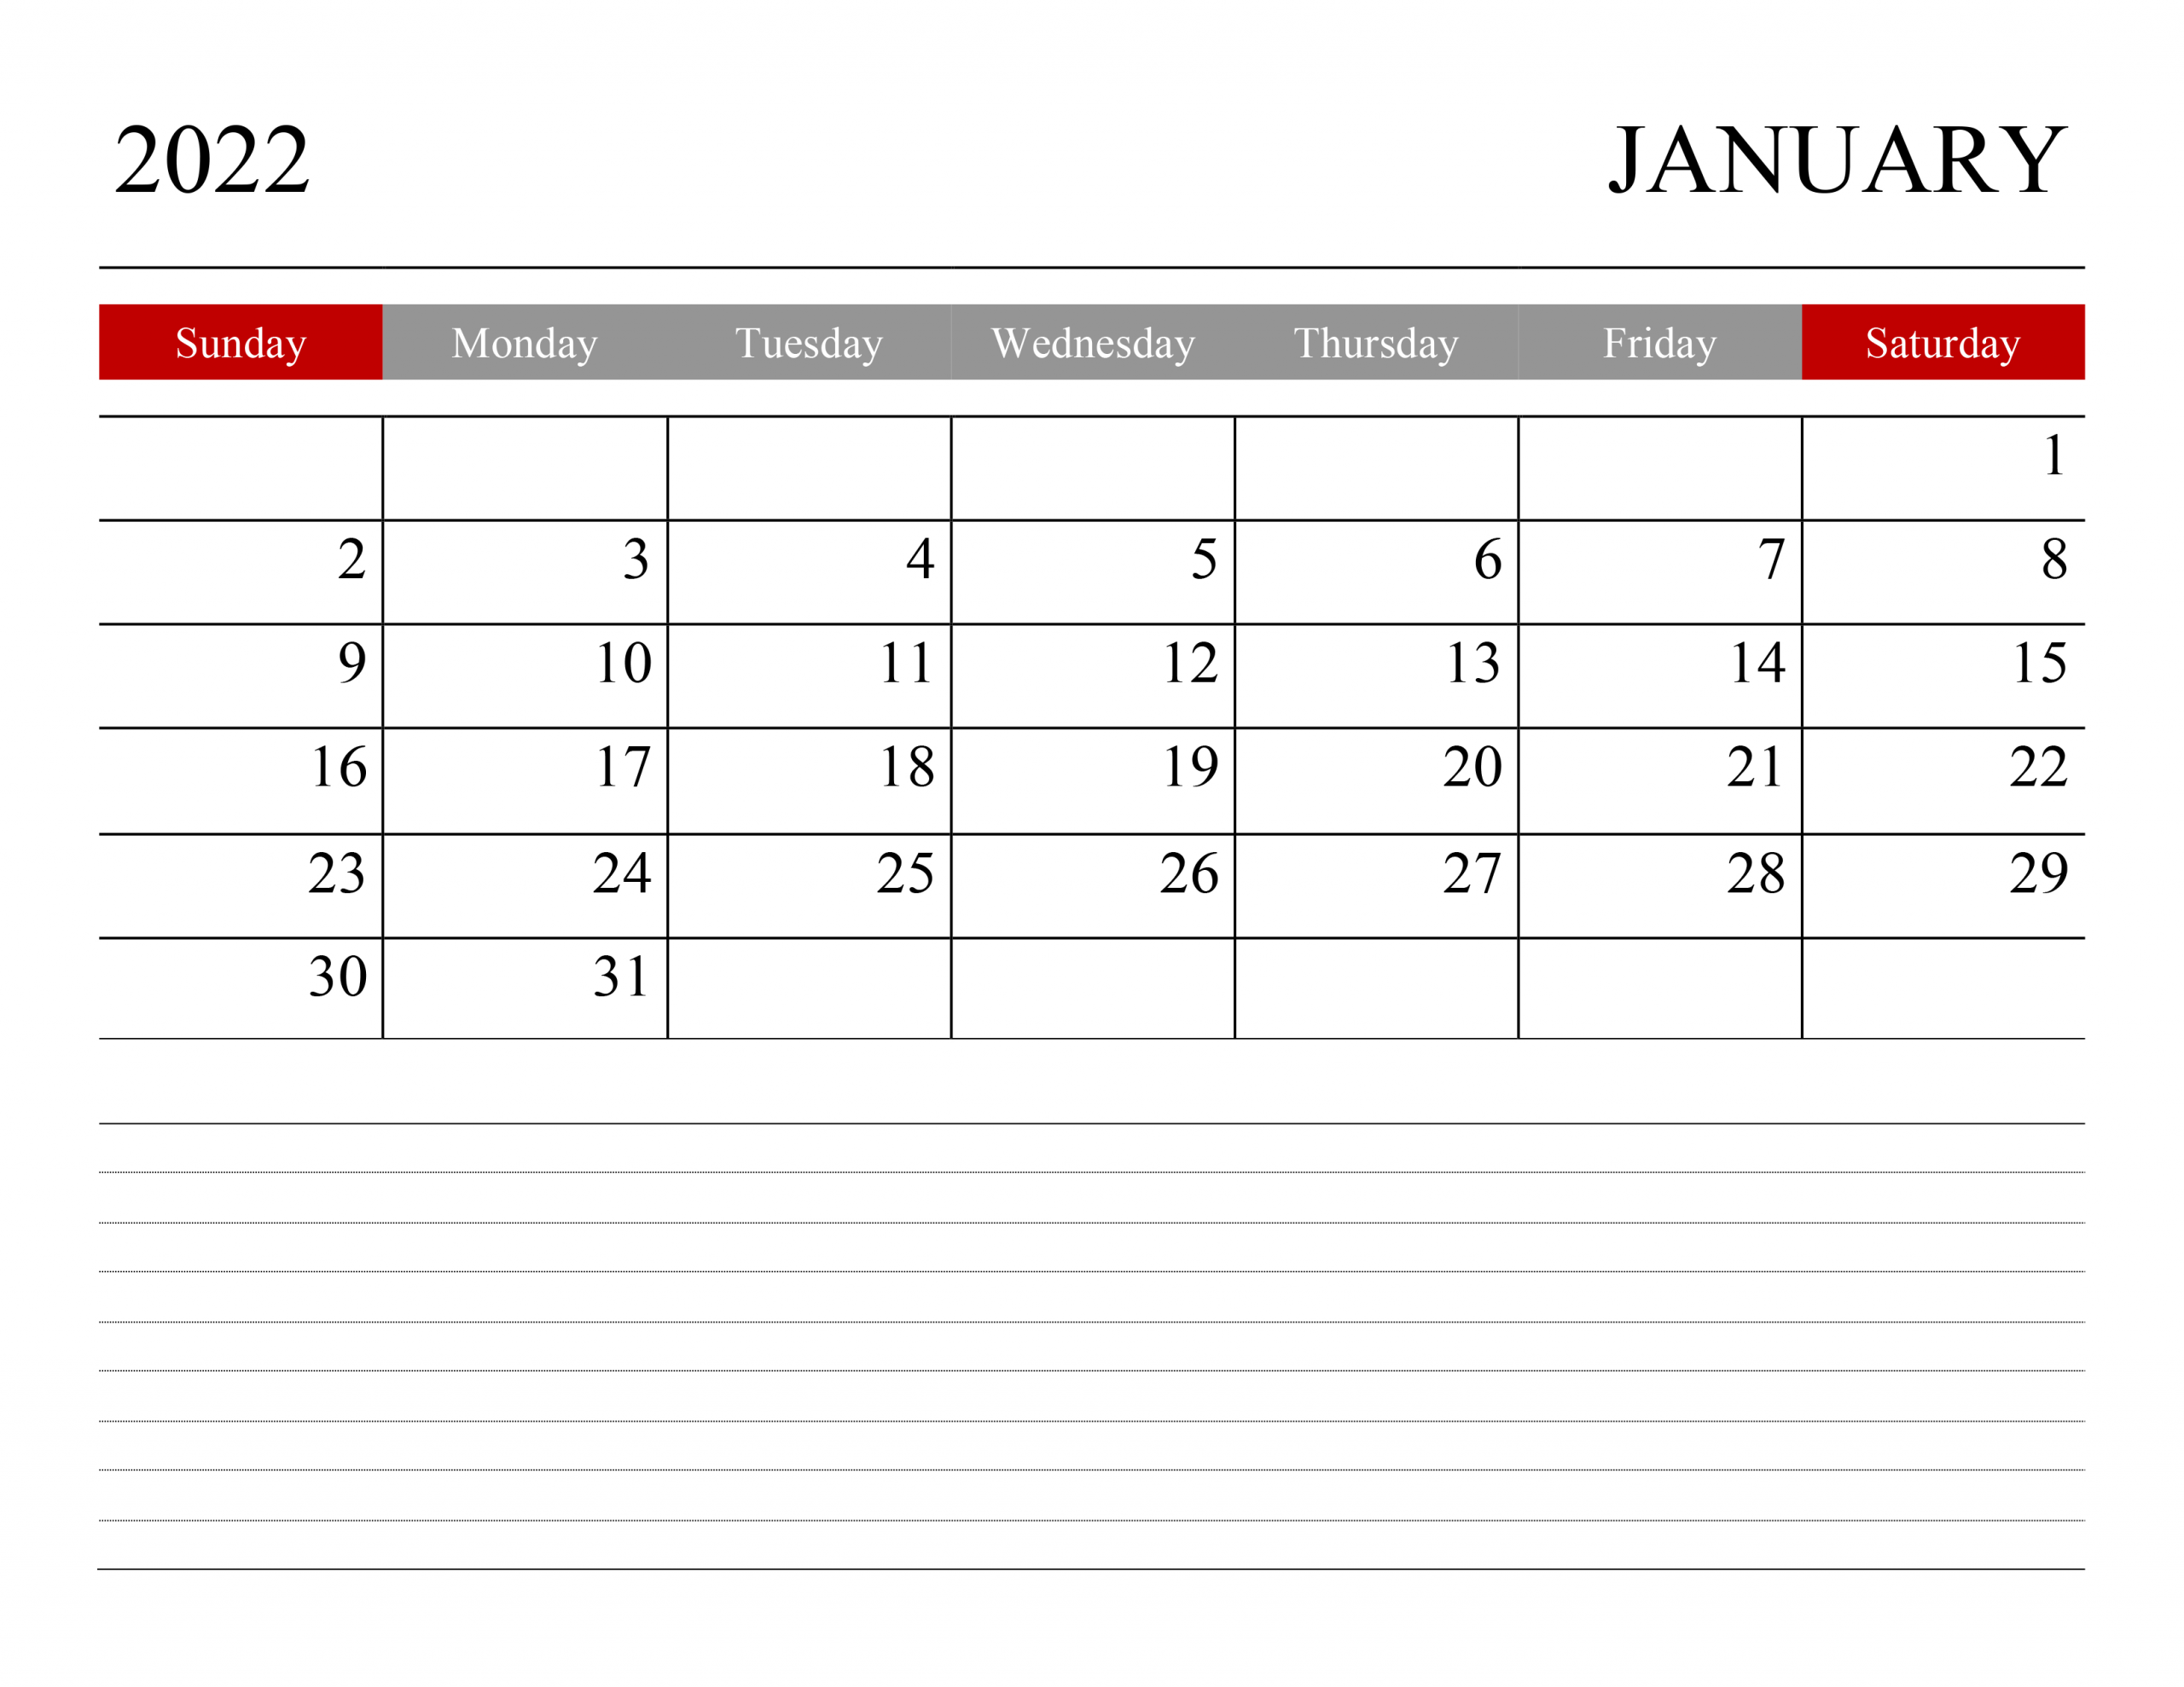 Calendar For January 2022 - Free-Calendarsu